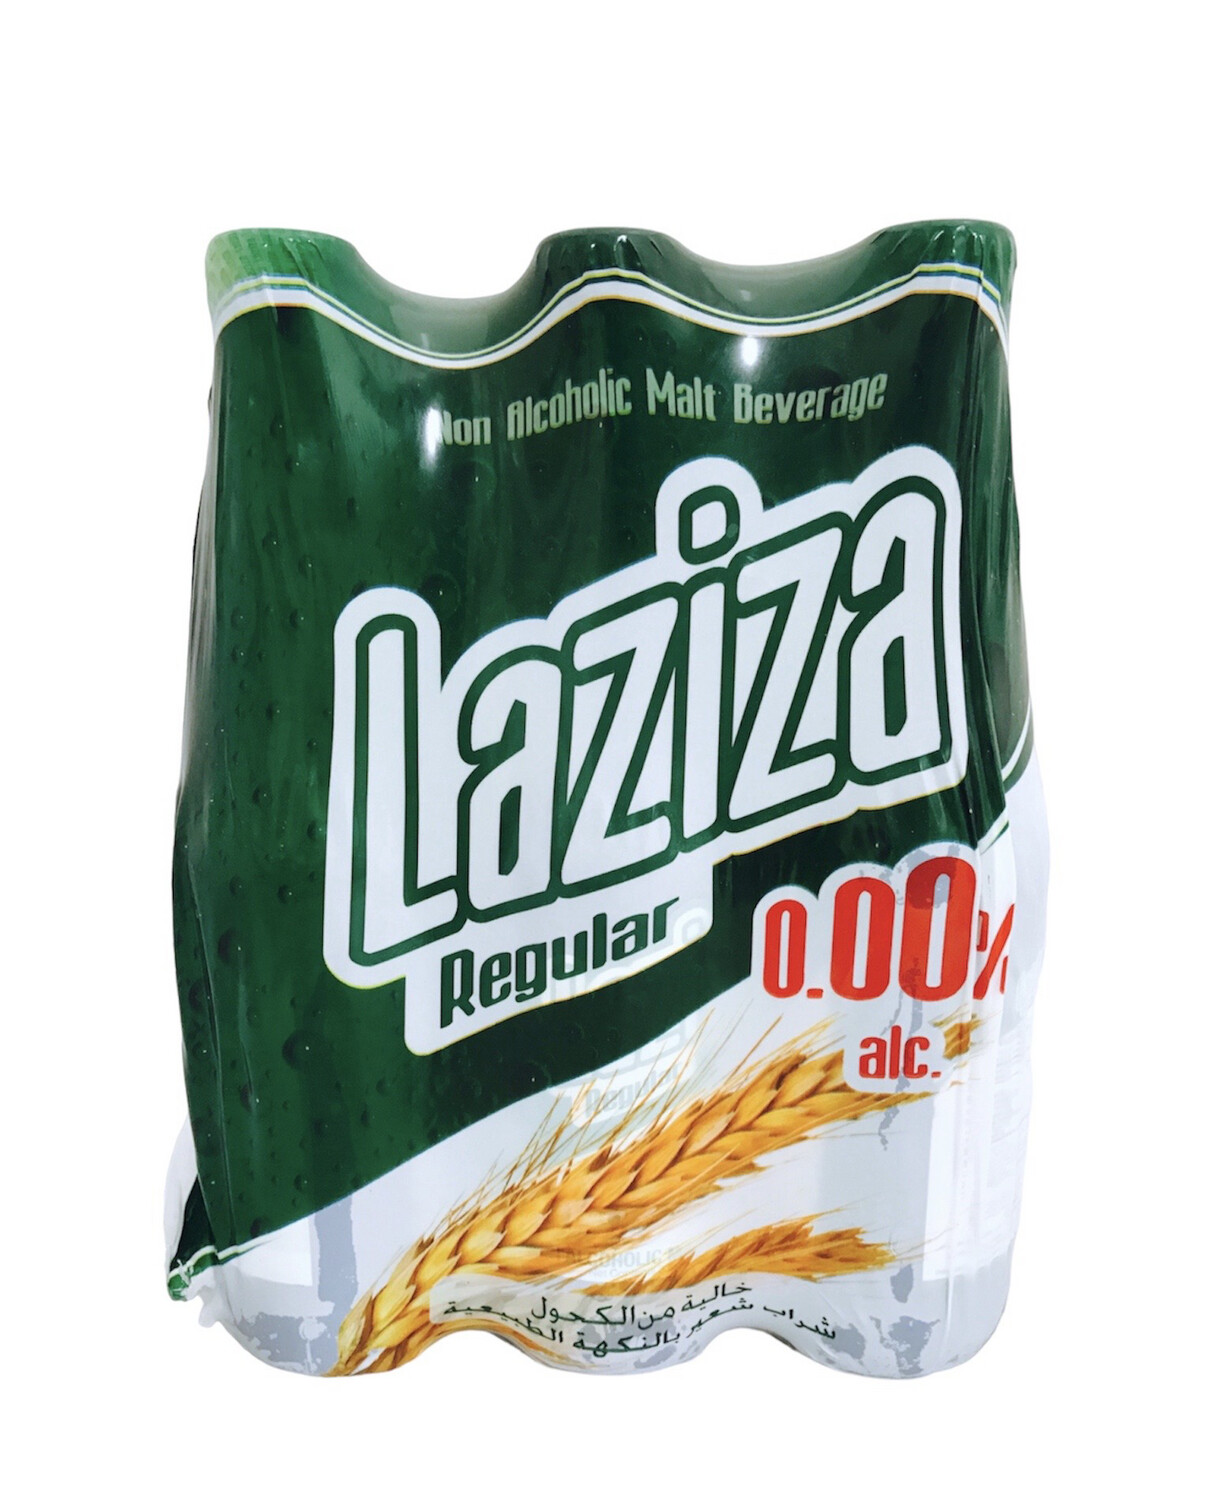 Laziza Regular 24x330ml